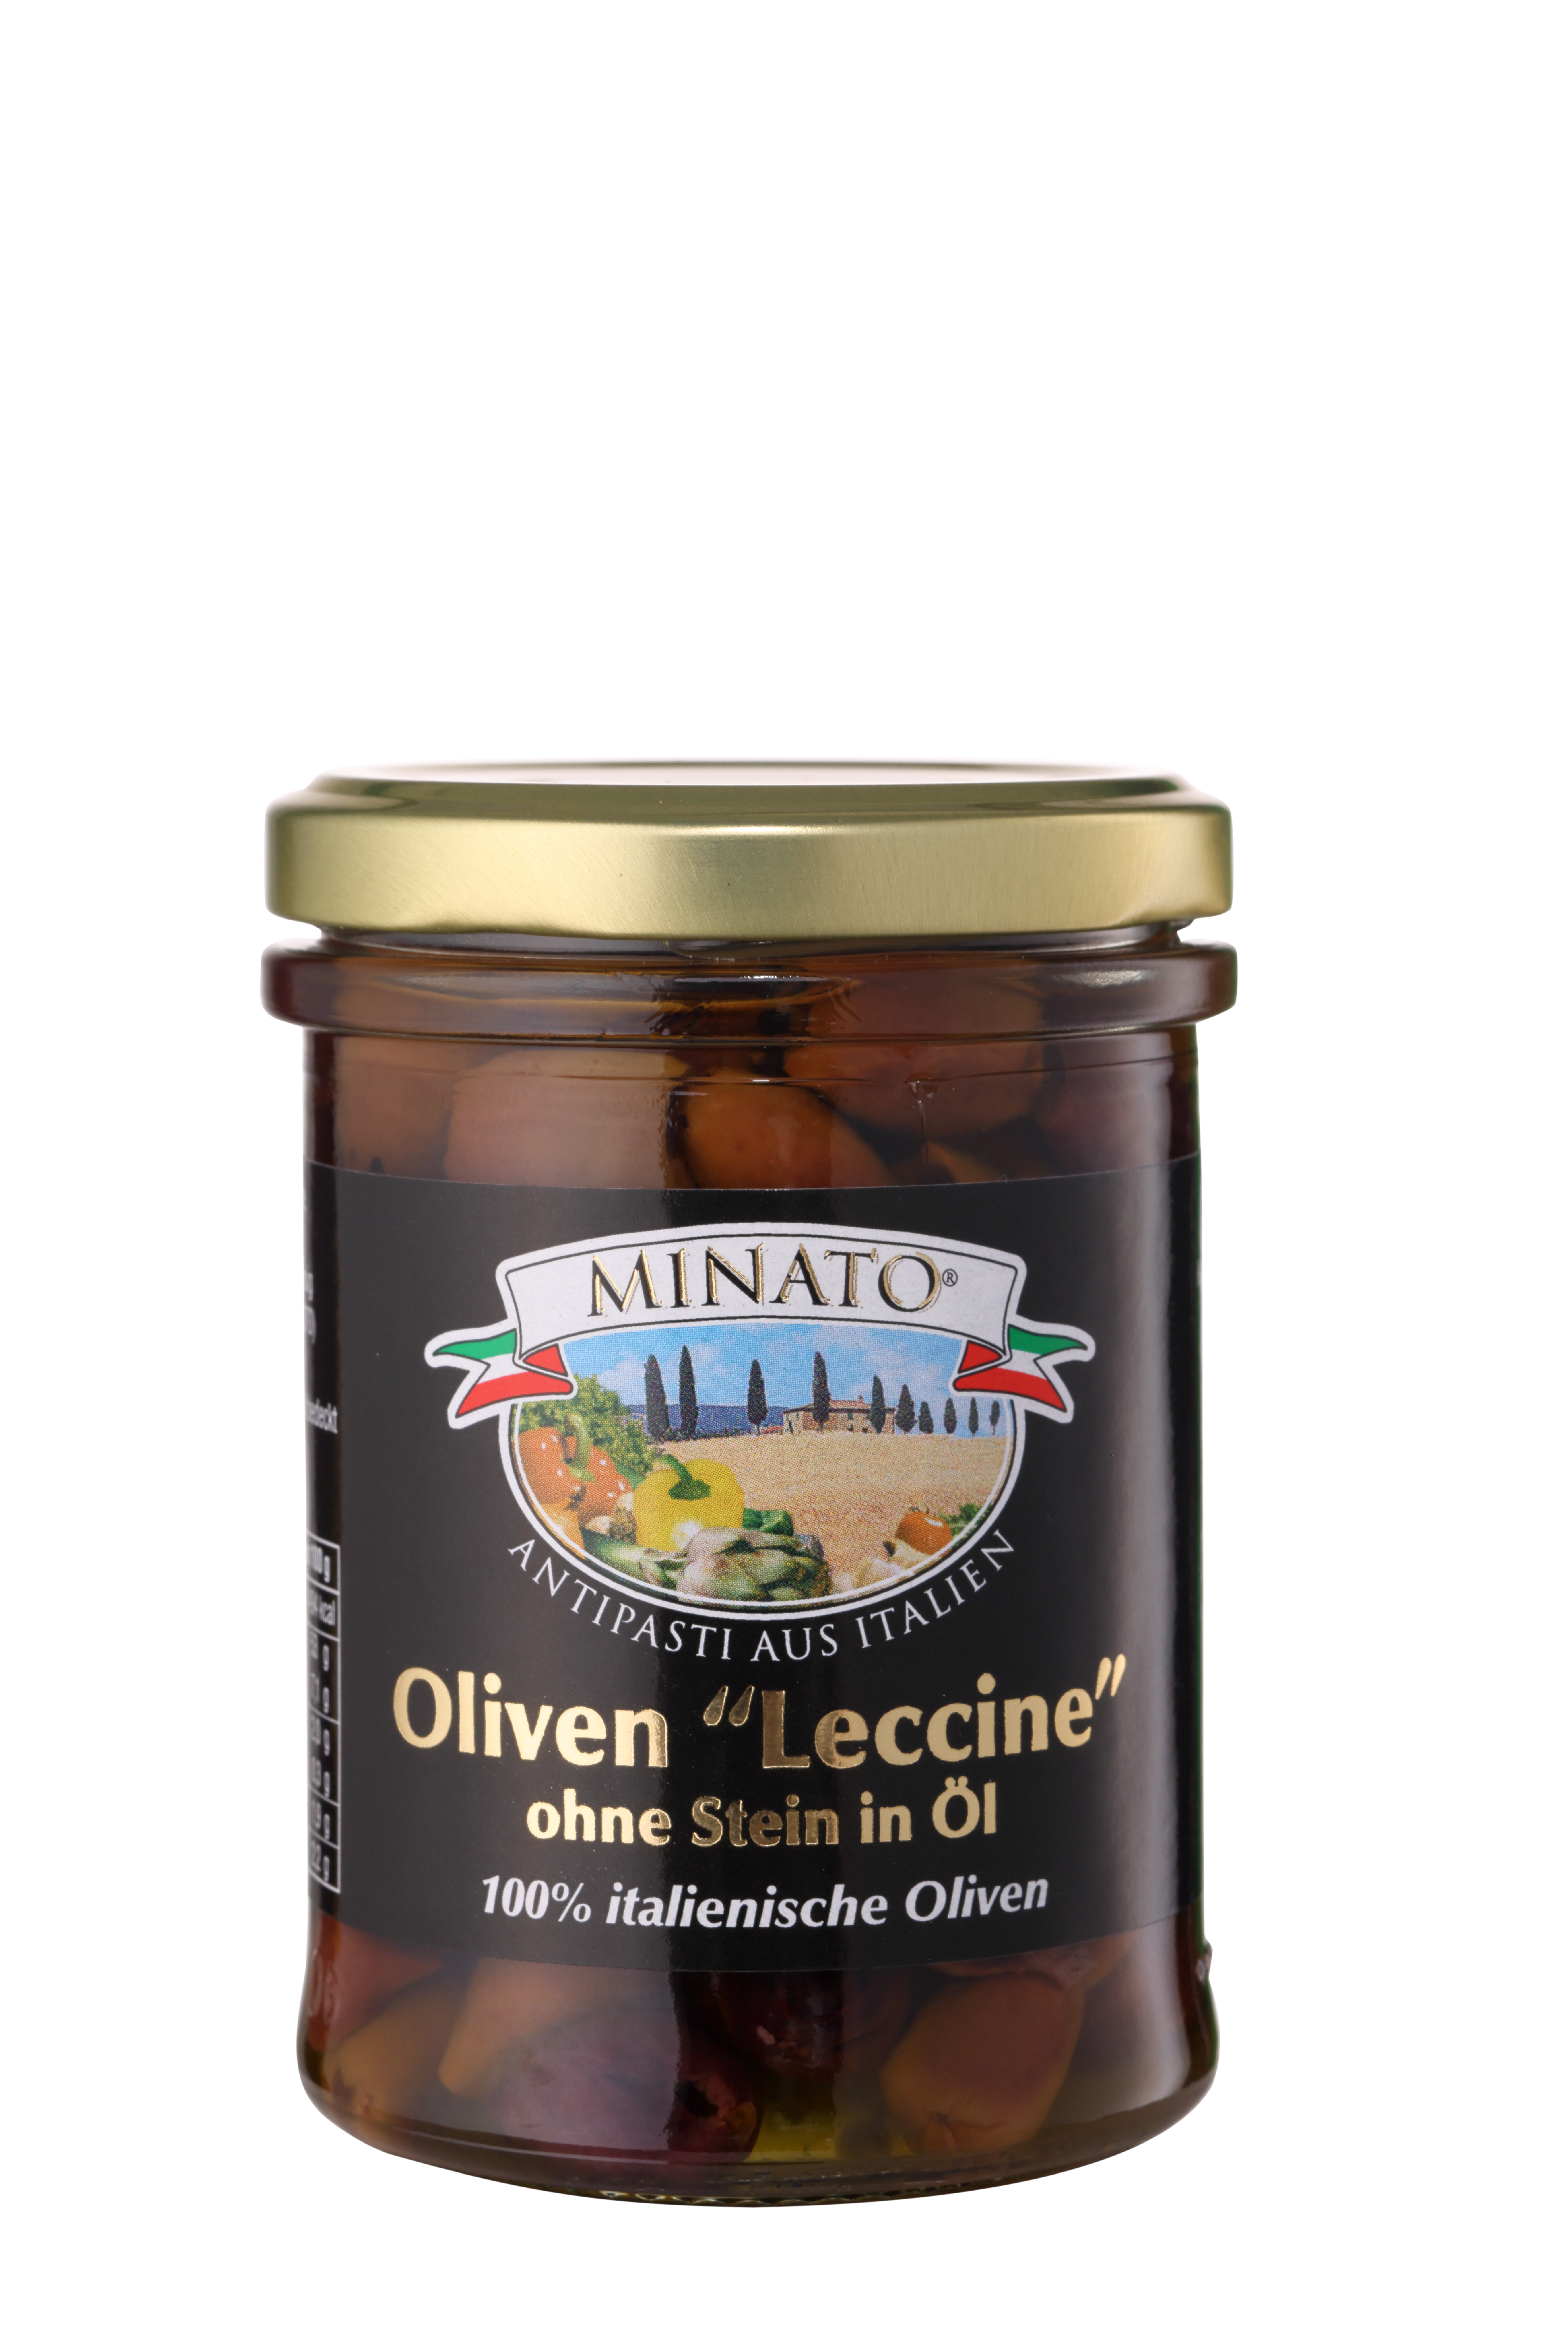 Minato, Leccine Oliven 100% italienisch , ohne Stein in Öl, 180g